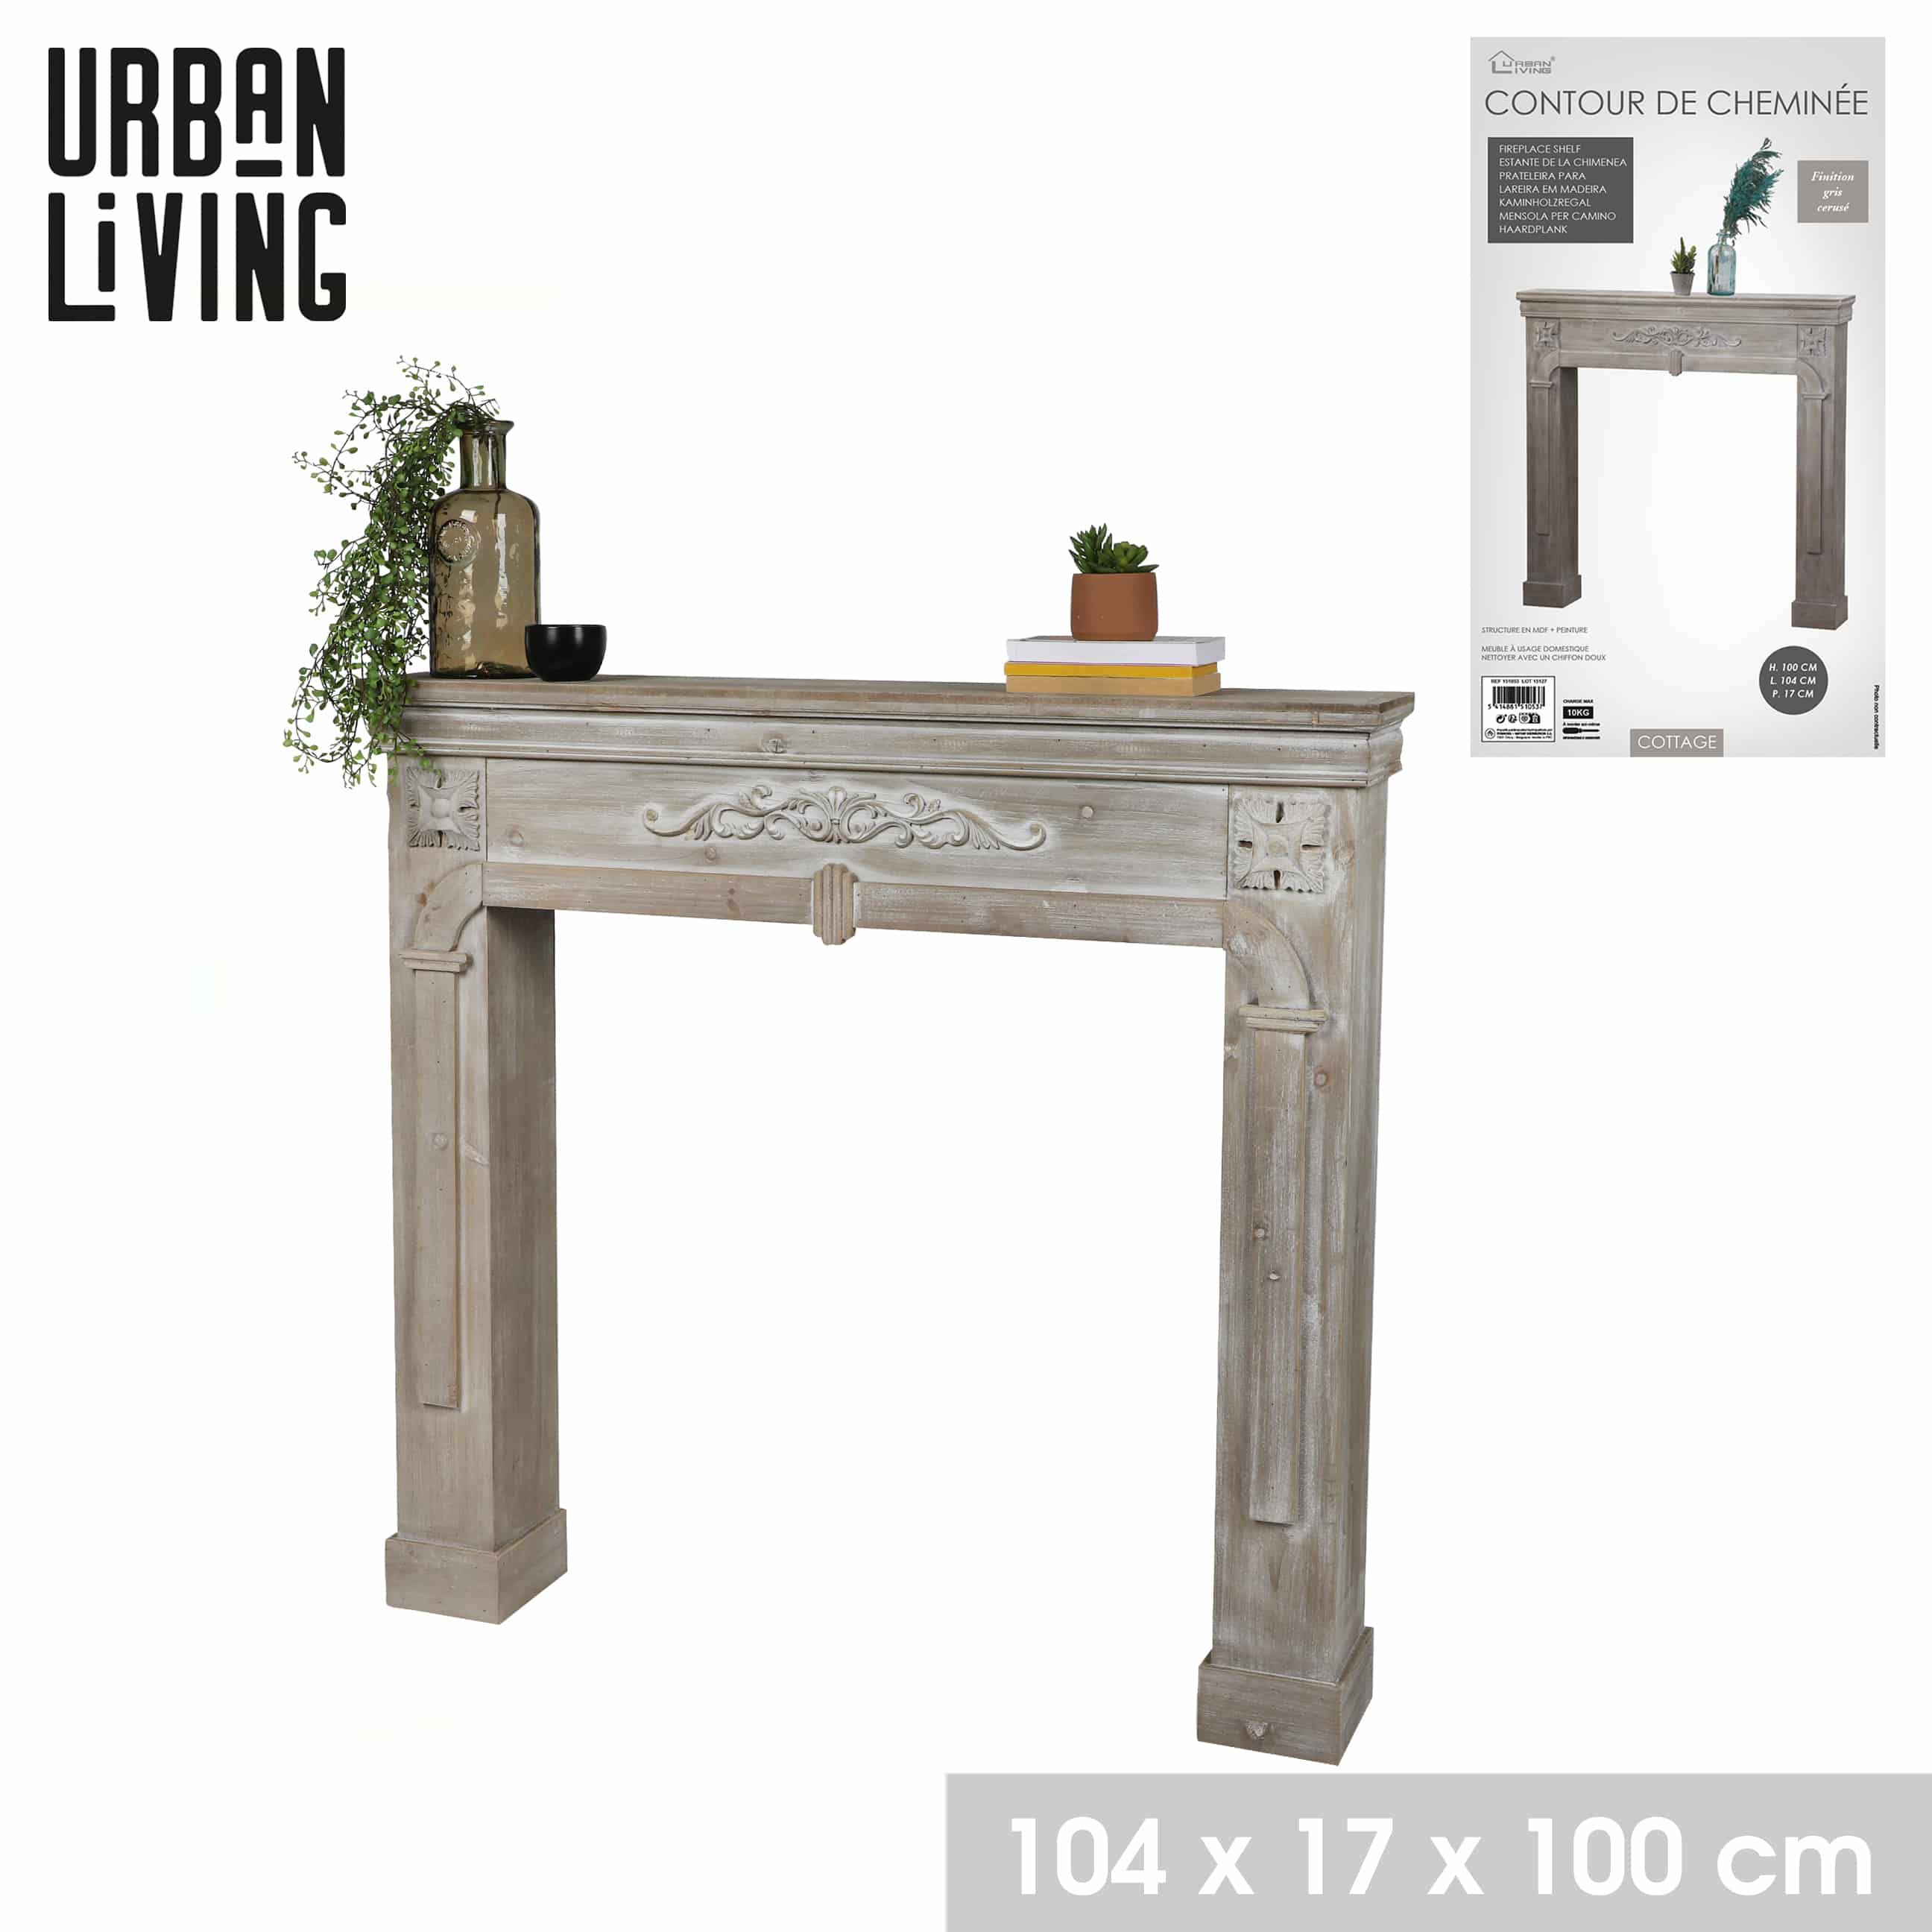 Urban living Openhaard Ombouw - Schouw Ombouw 107x18x100 cm - Grijs